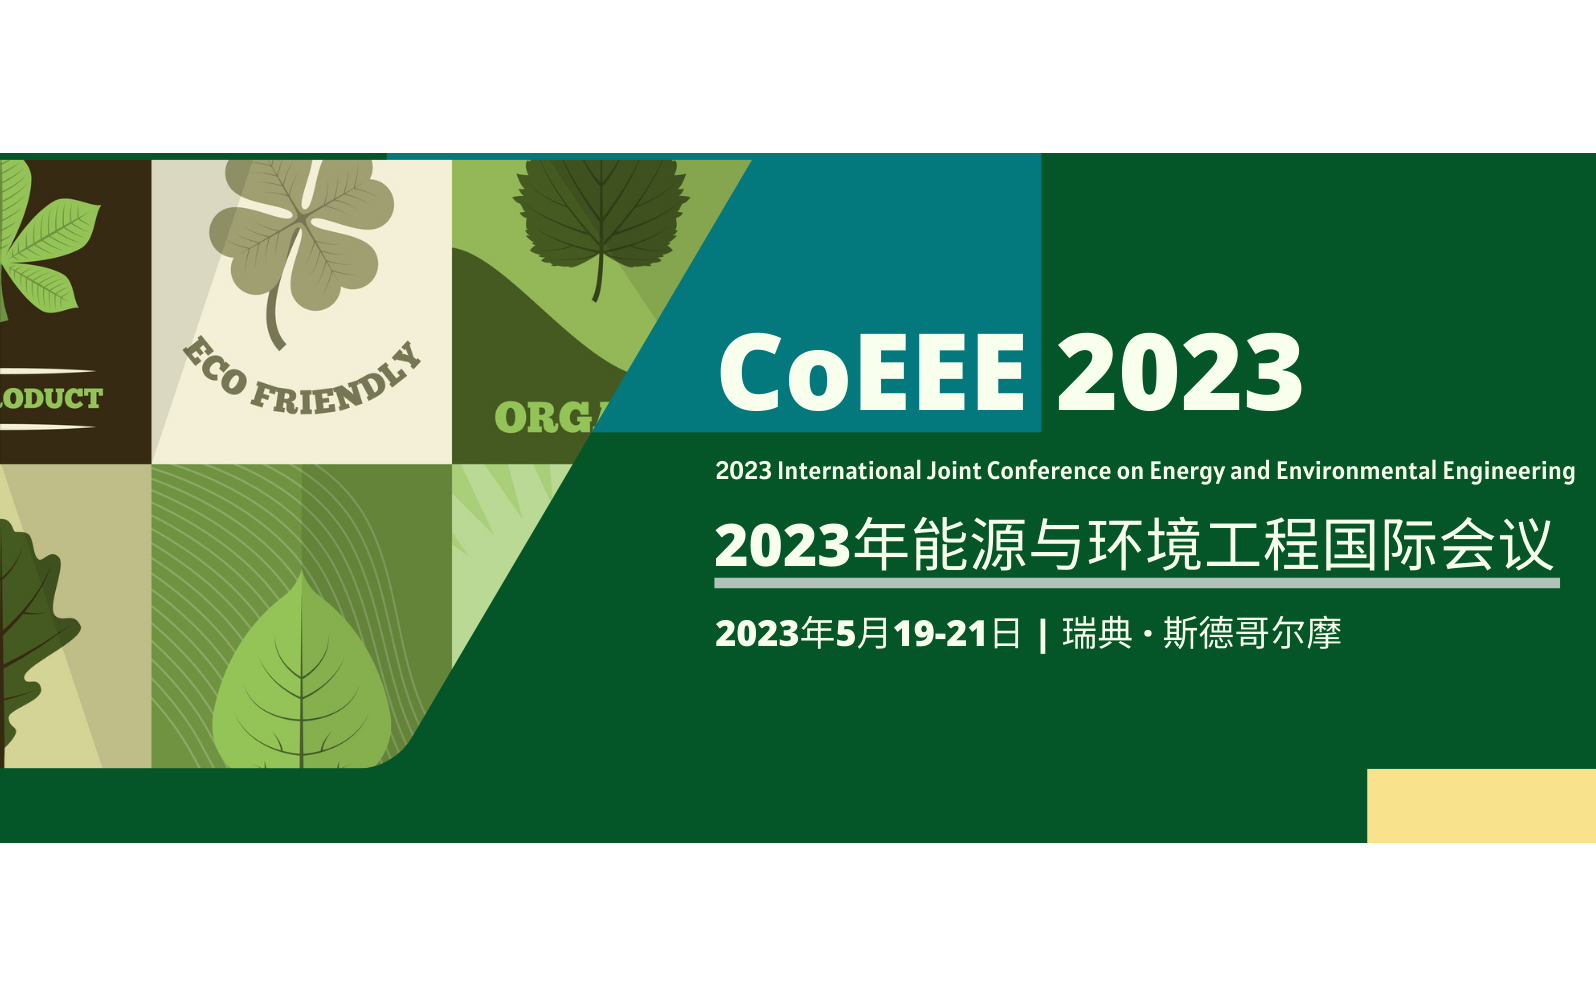 2023年能源与环境工程国际研讨会（CoEEE 2023）